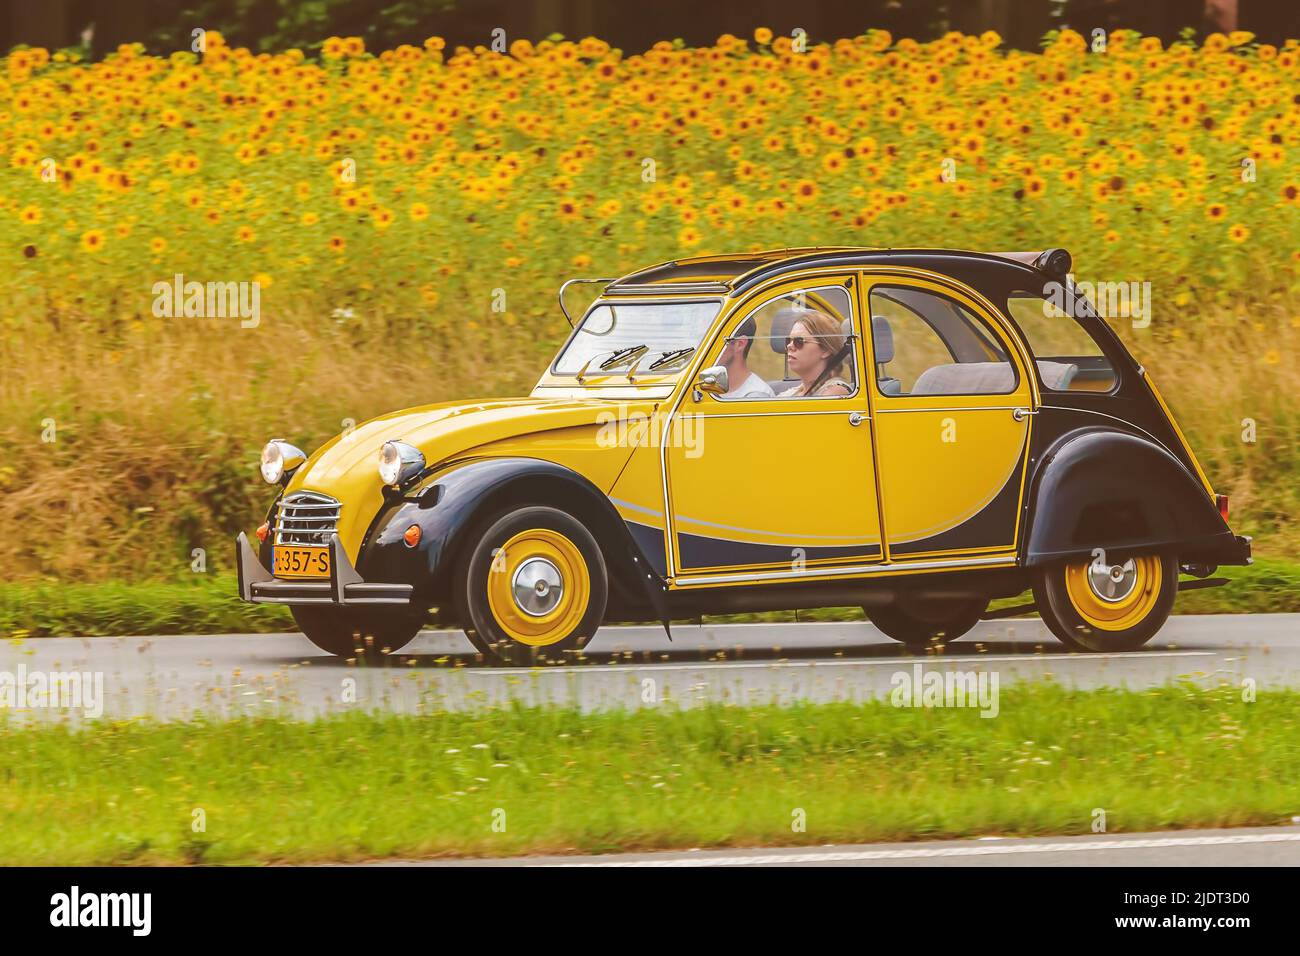 DIEREN, NIEDERLANDE - 14. AUGUST 2016: Retro-Style-Bild eines Vintage-Stadtfahrens 2CV auf einer Straße vor einem Feld mit blühenden Sonnenblumen Stockfoto